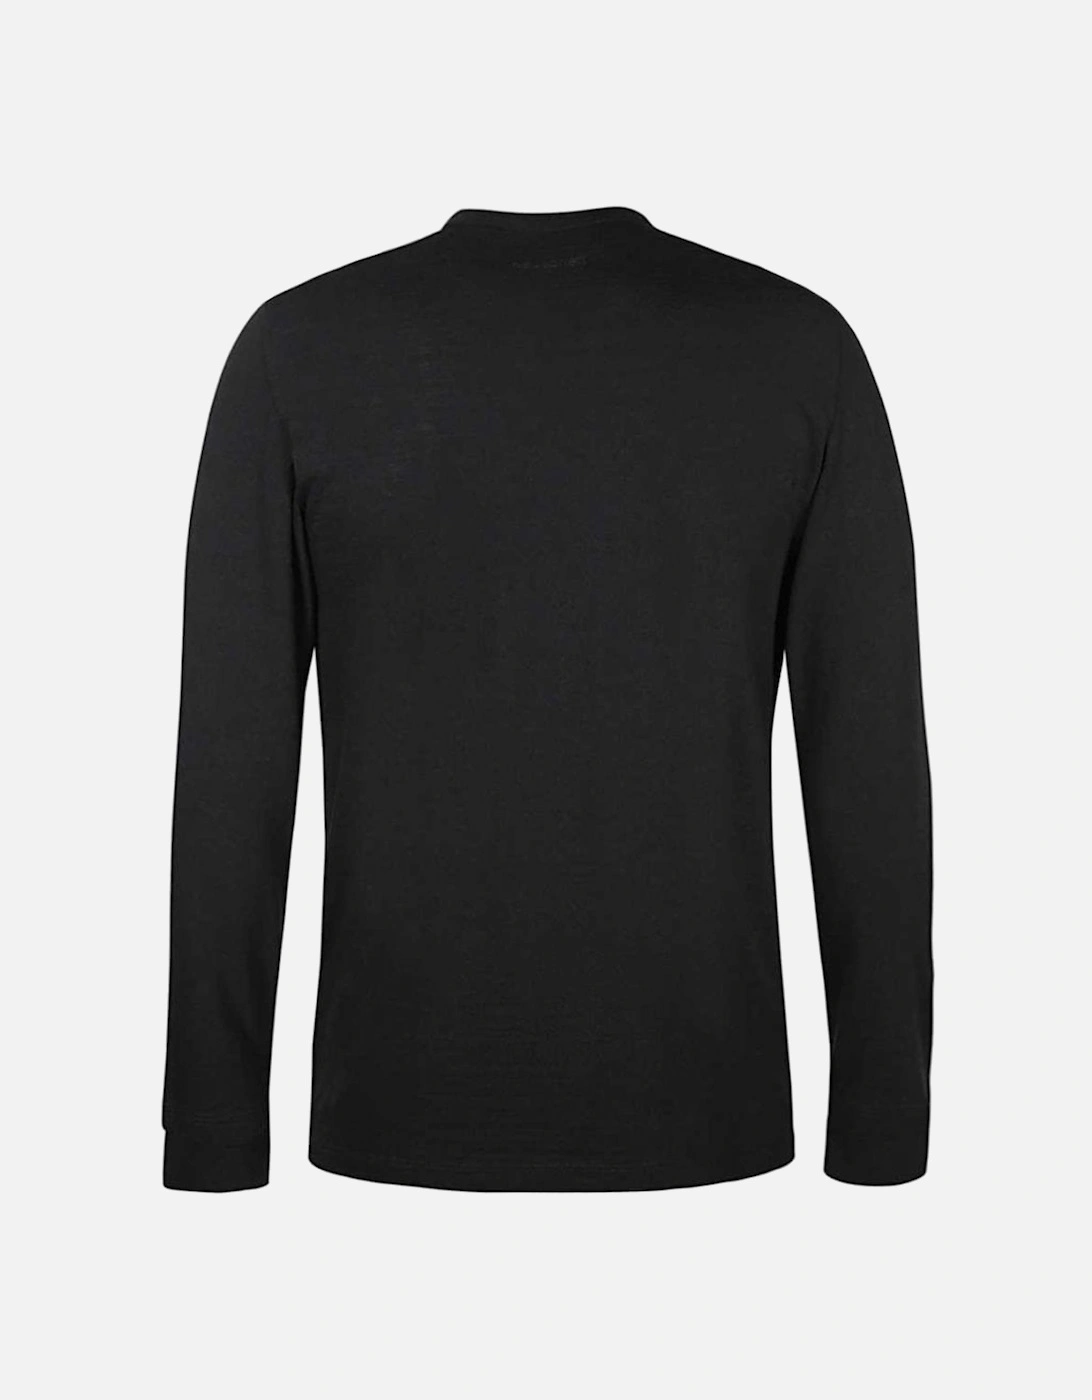 Men's Long Sleeve Jersey T-shirt Black